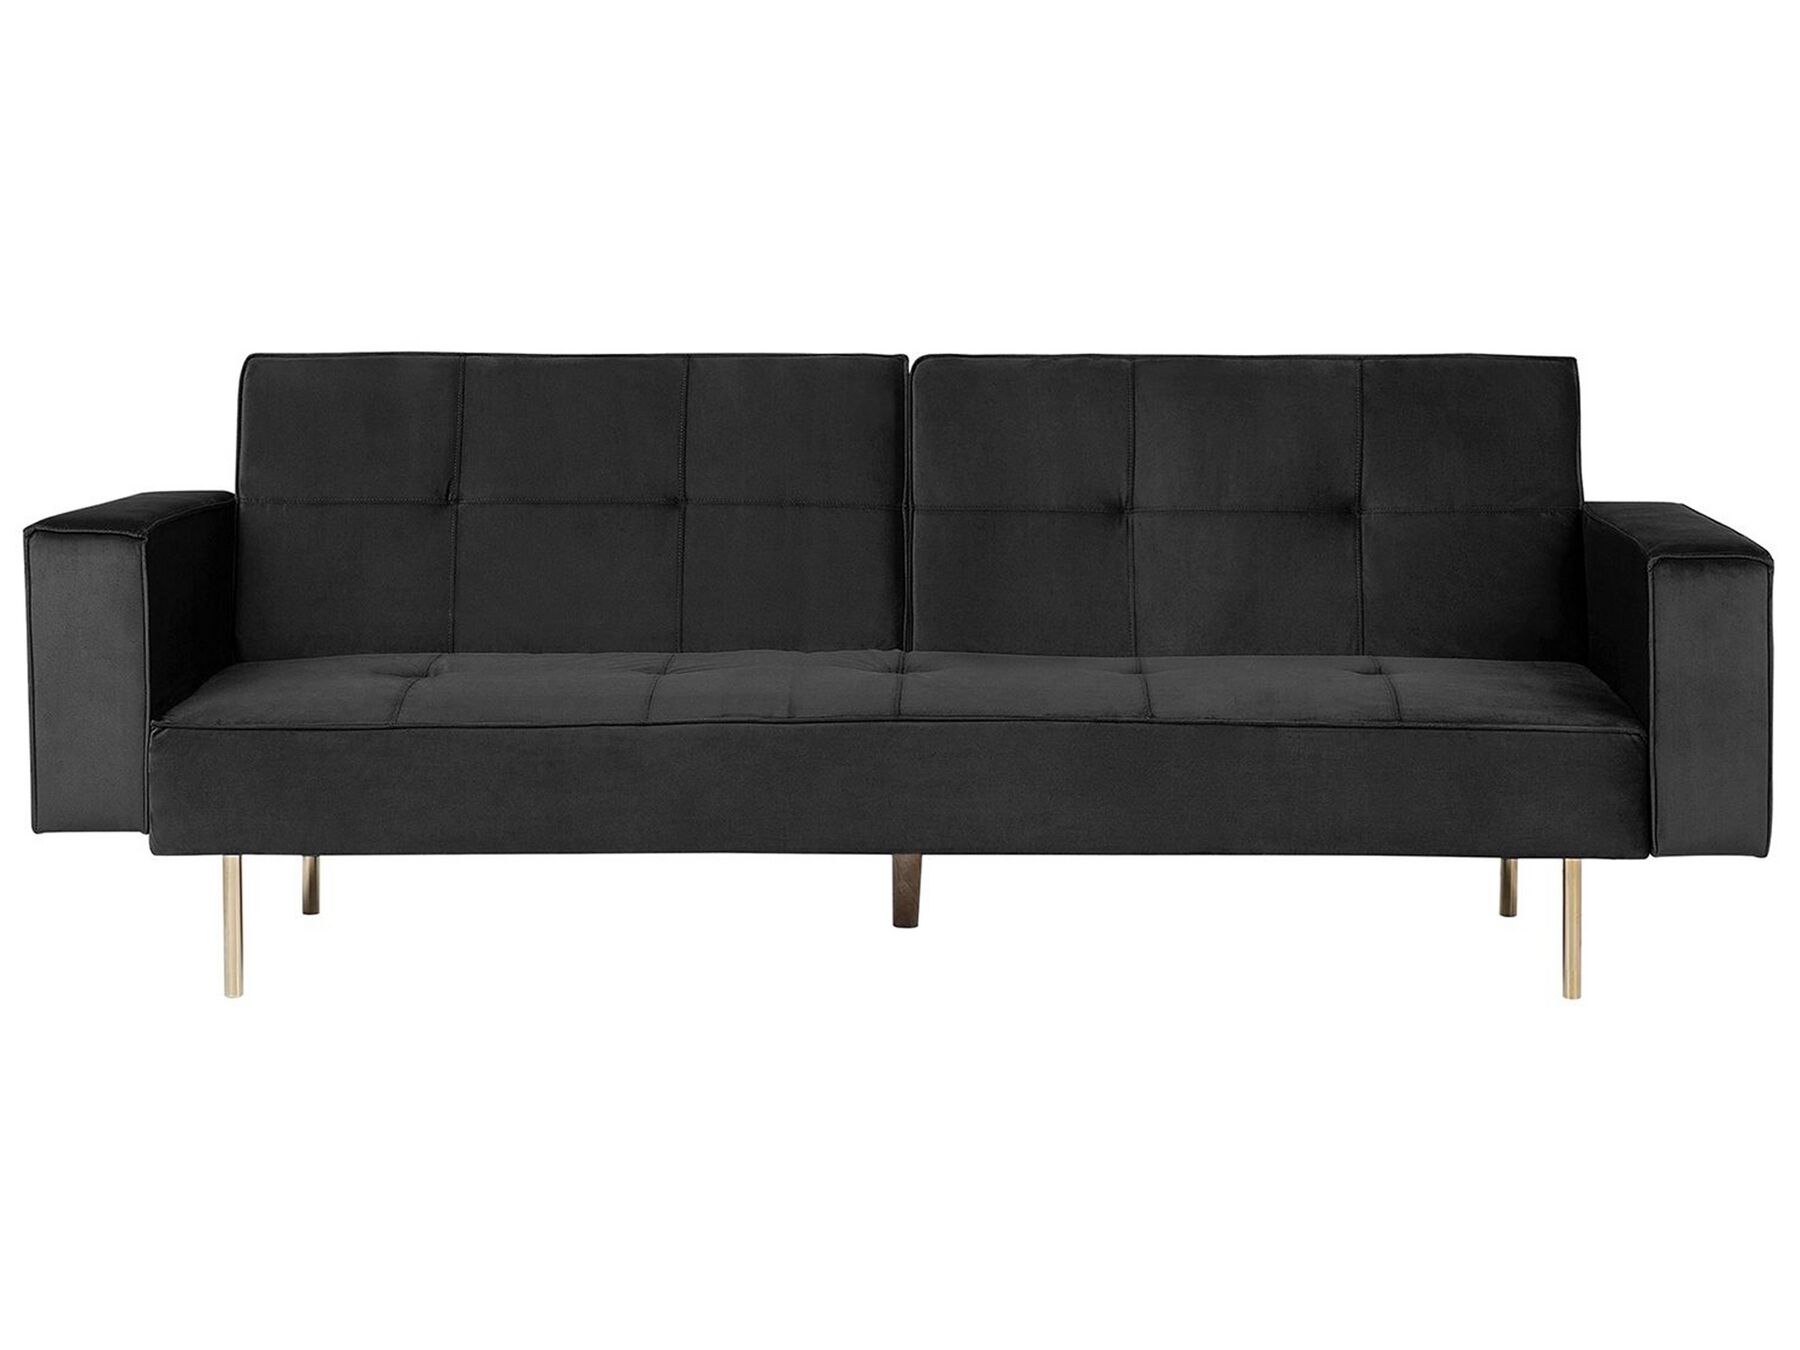 Modern Velvet 3 Seater Sofa Bed Tufted Fabric Upholstery Track Arms Black Visnes